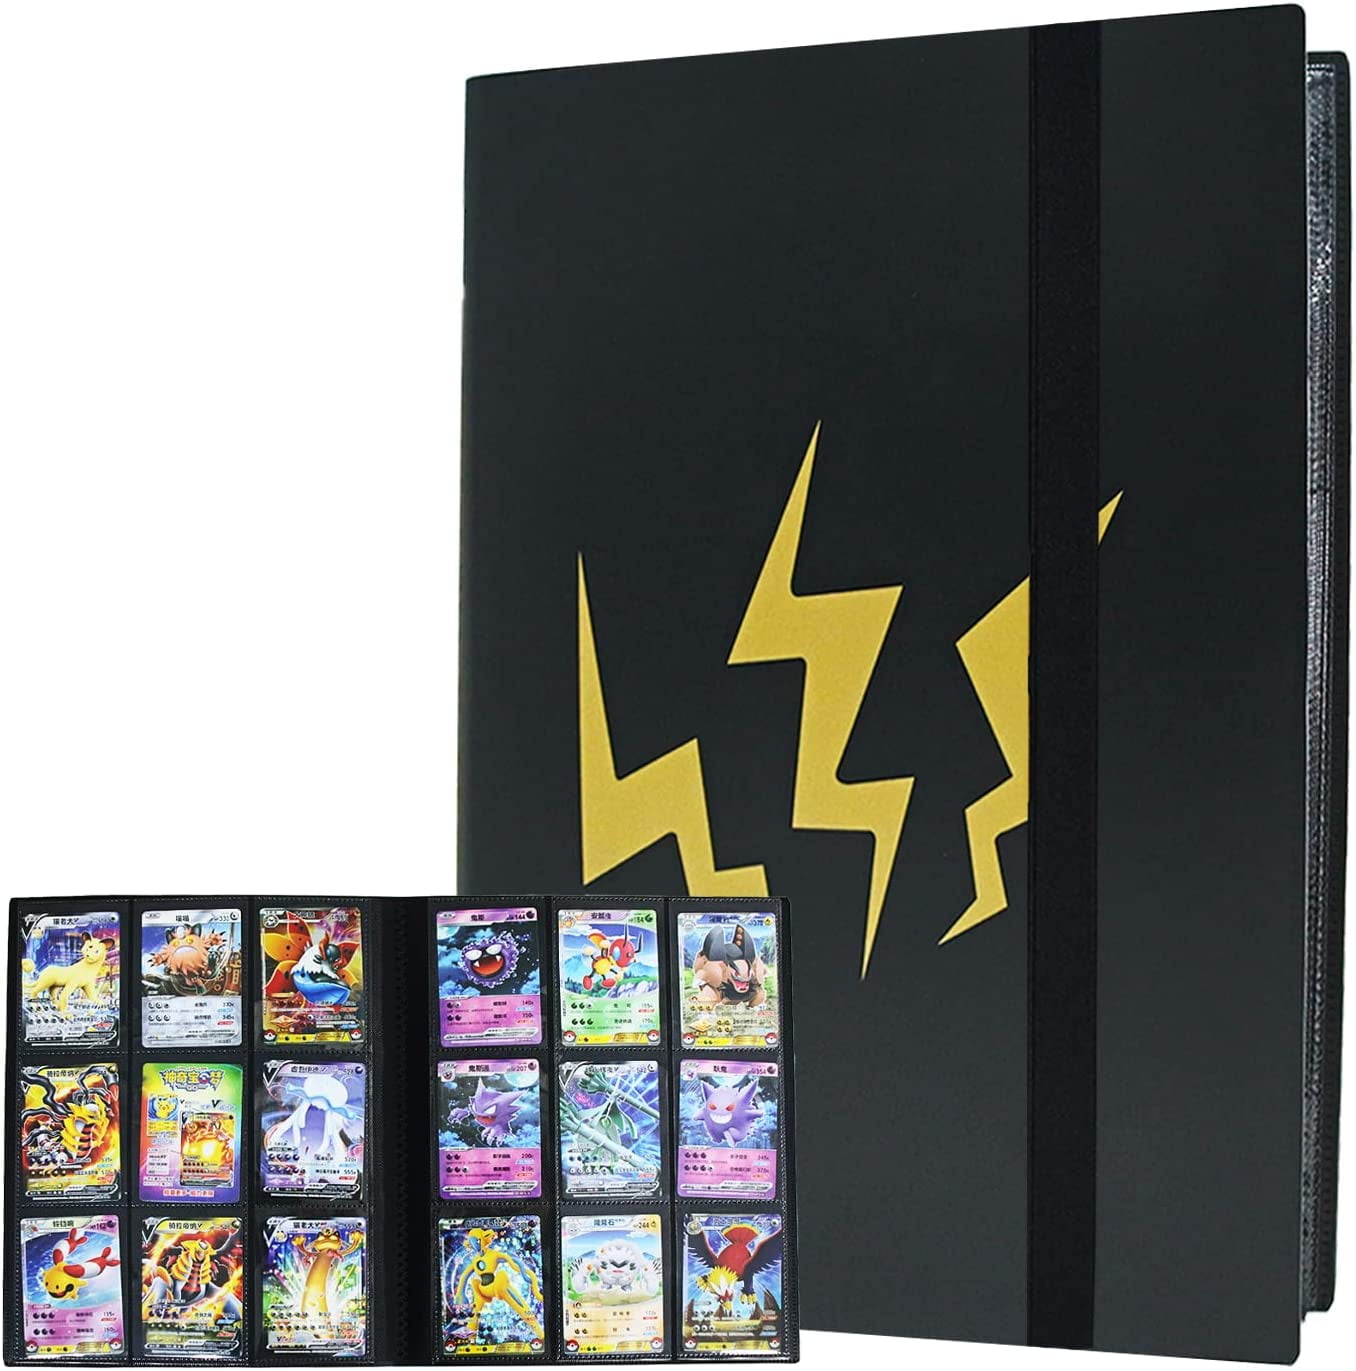 9 Pocket Trading Card Album for Pokemon Scrapbook for Pokemon